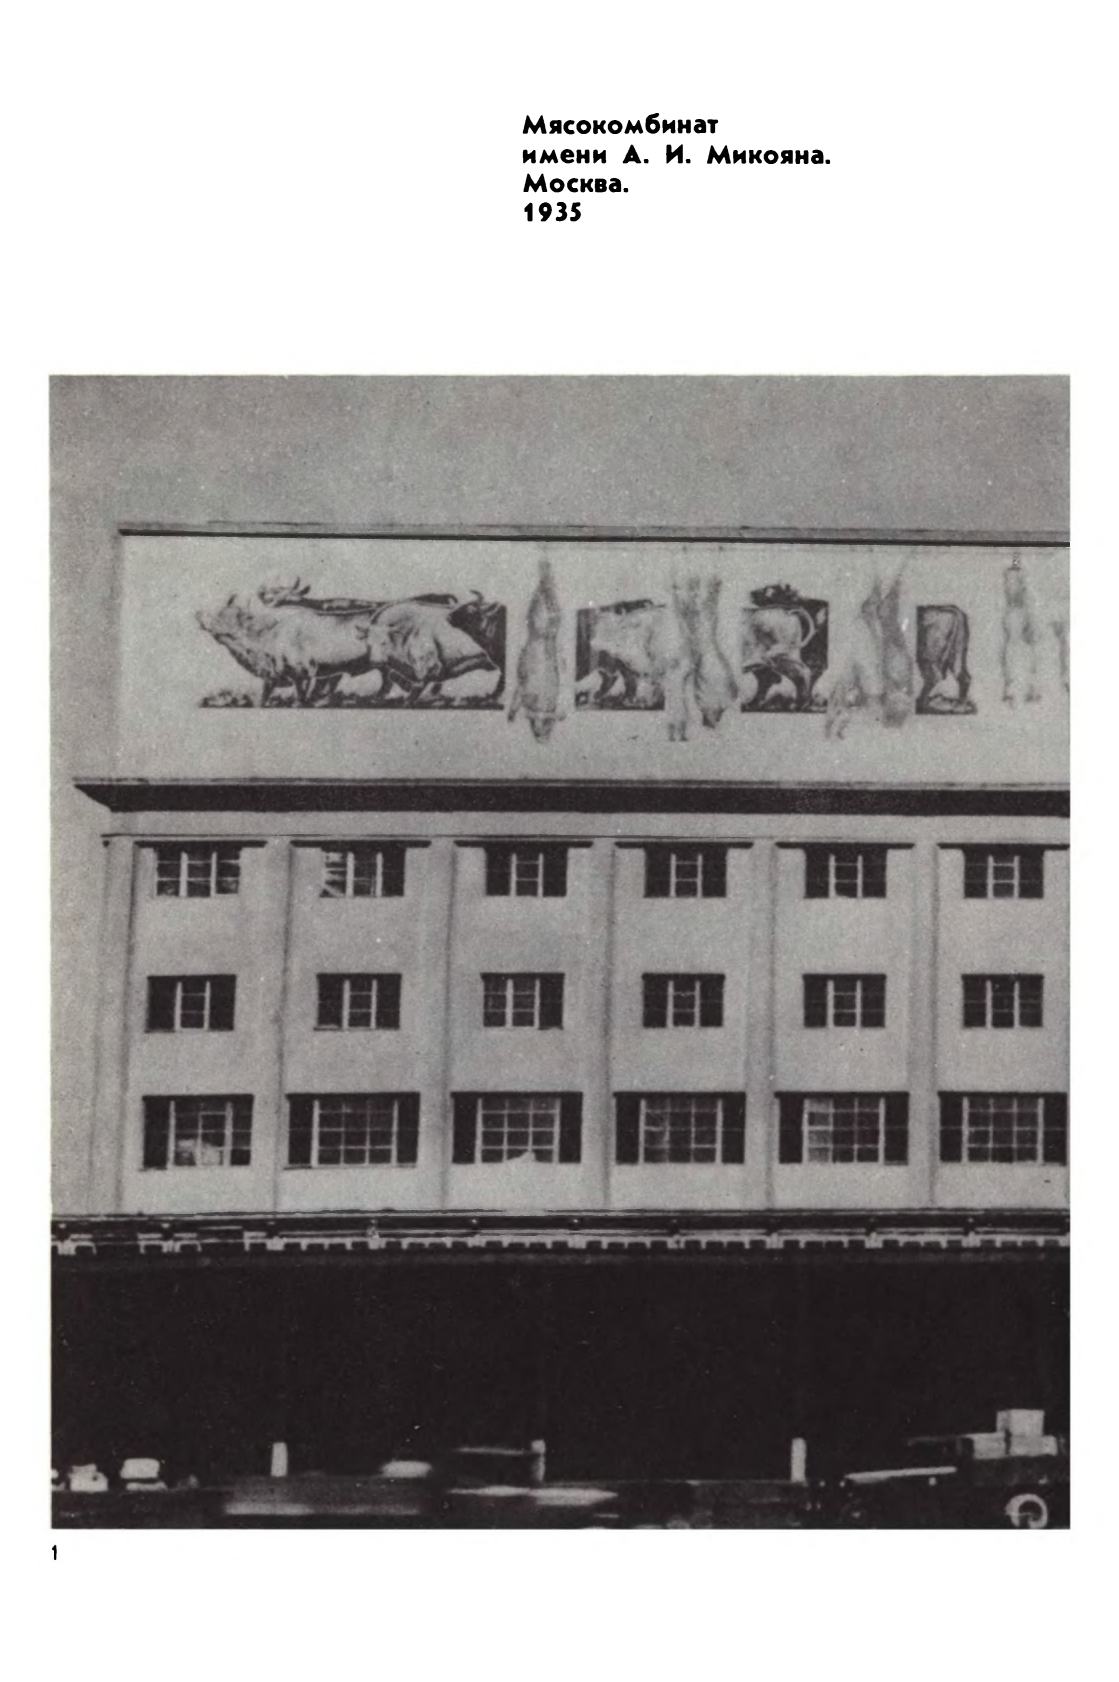 Мастерская монументальной живописи при Академии архитектуры СССР